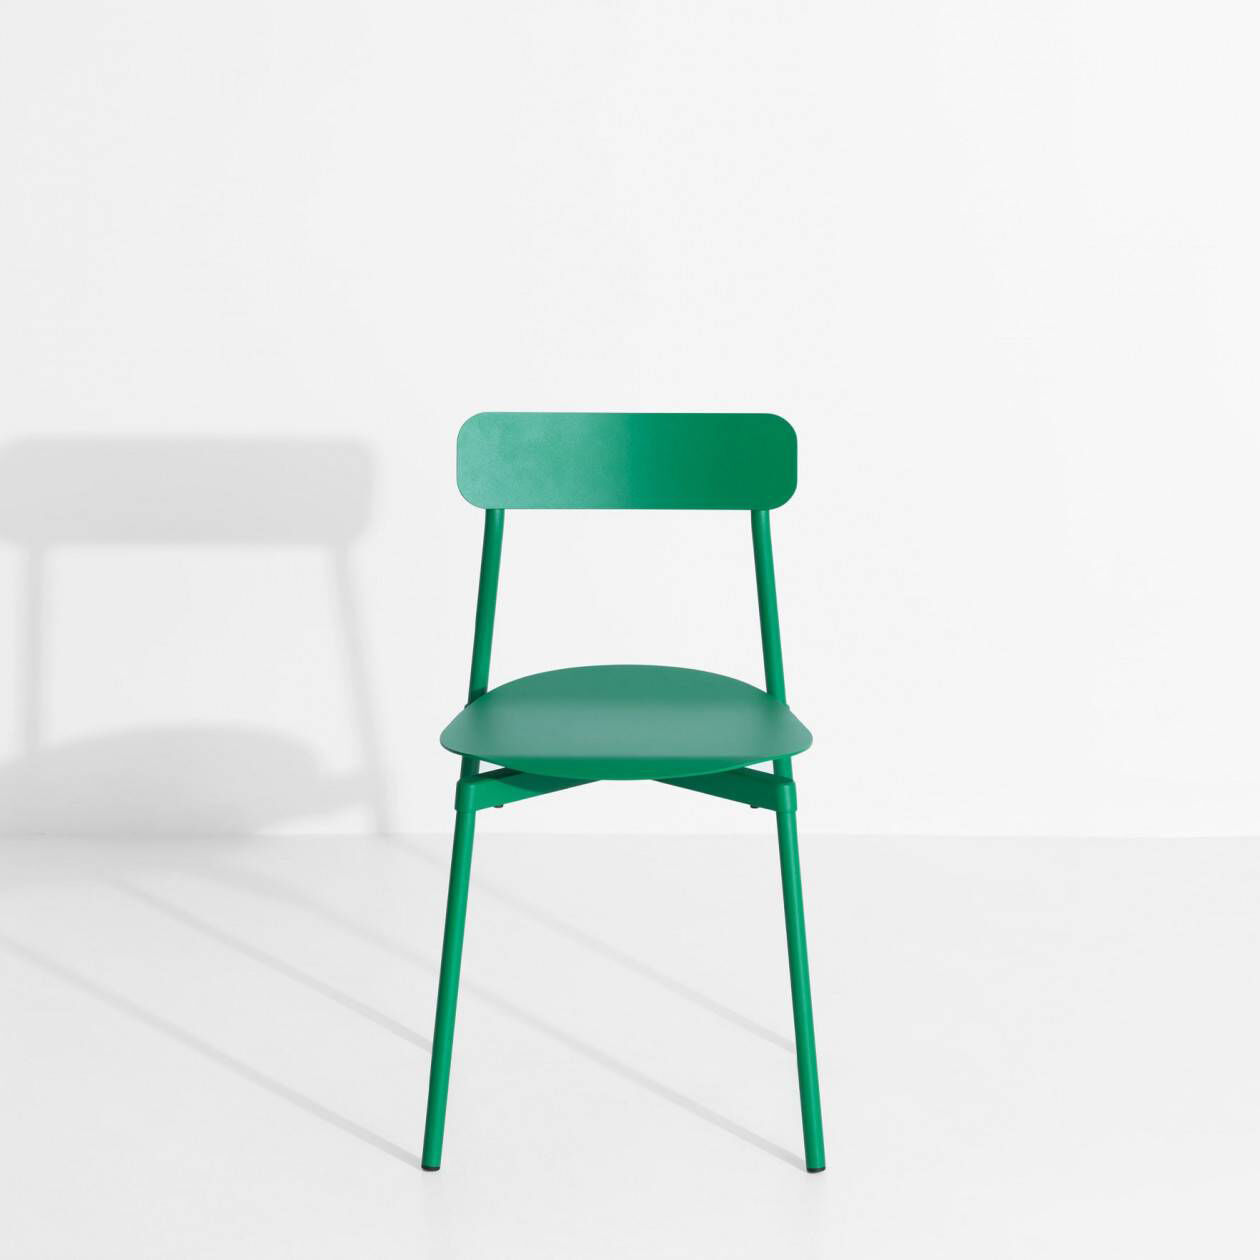 Designer-Stuhl "Fromme" von Tom Chung für Petite Friture